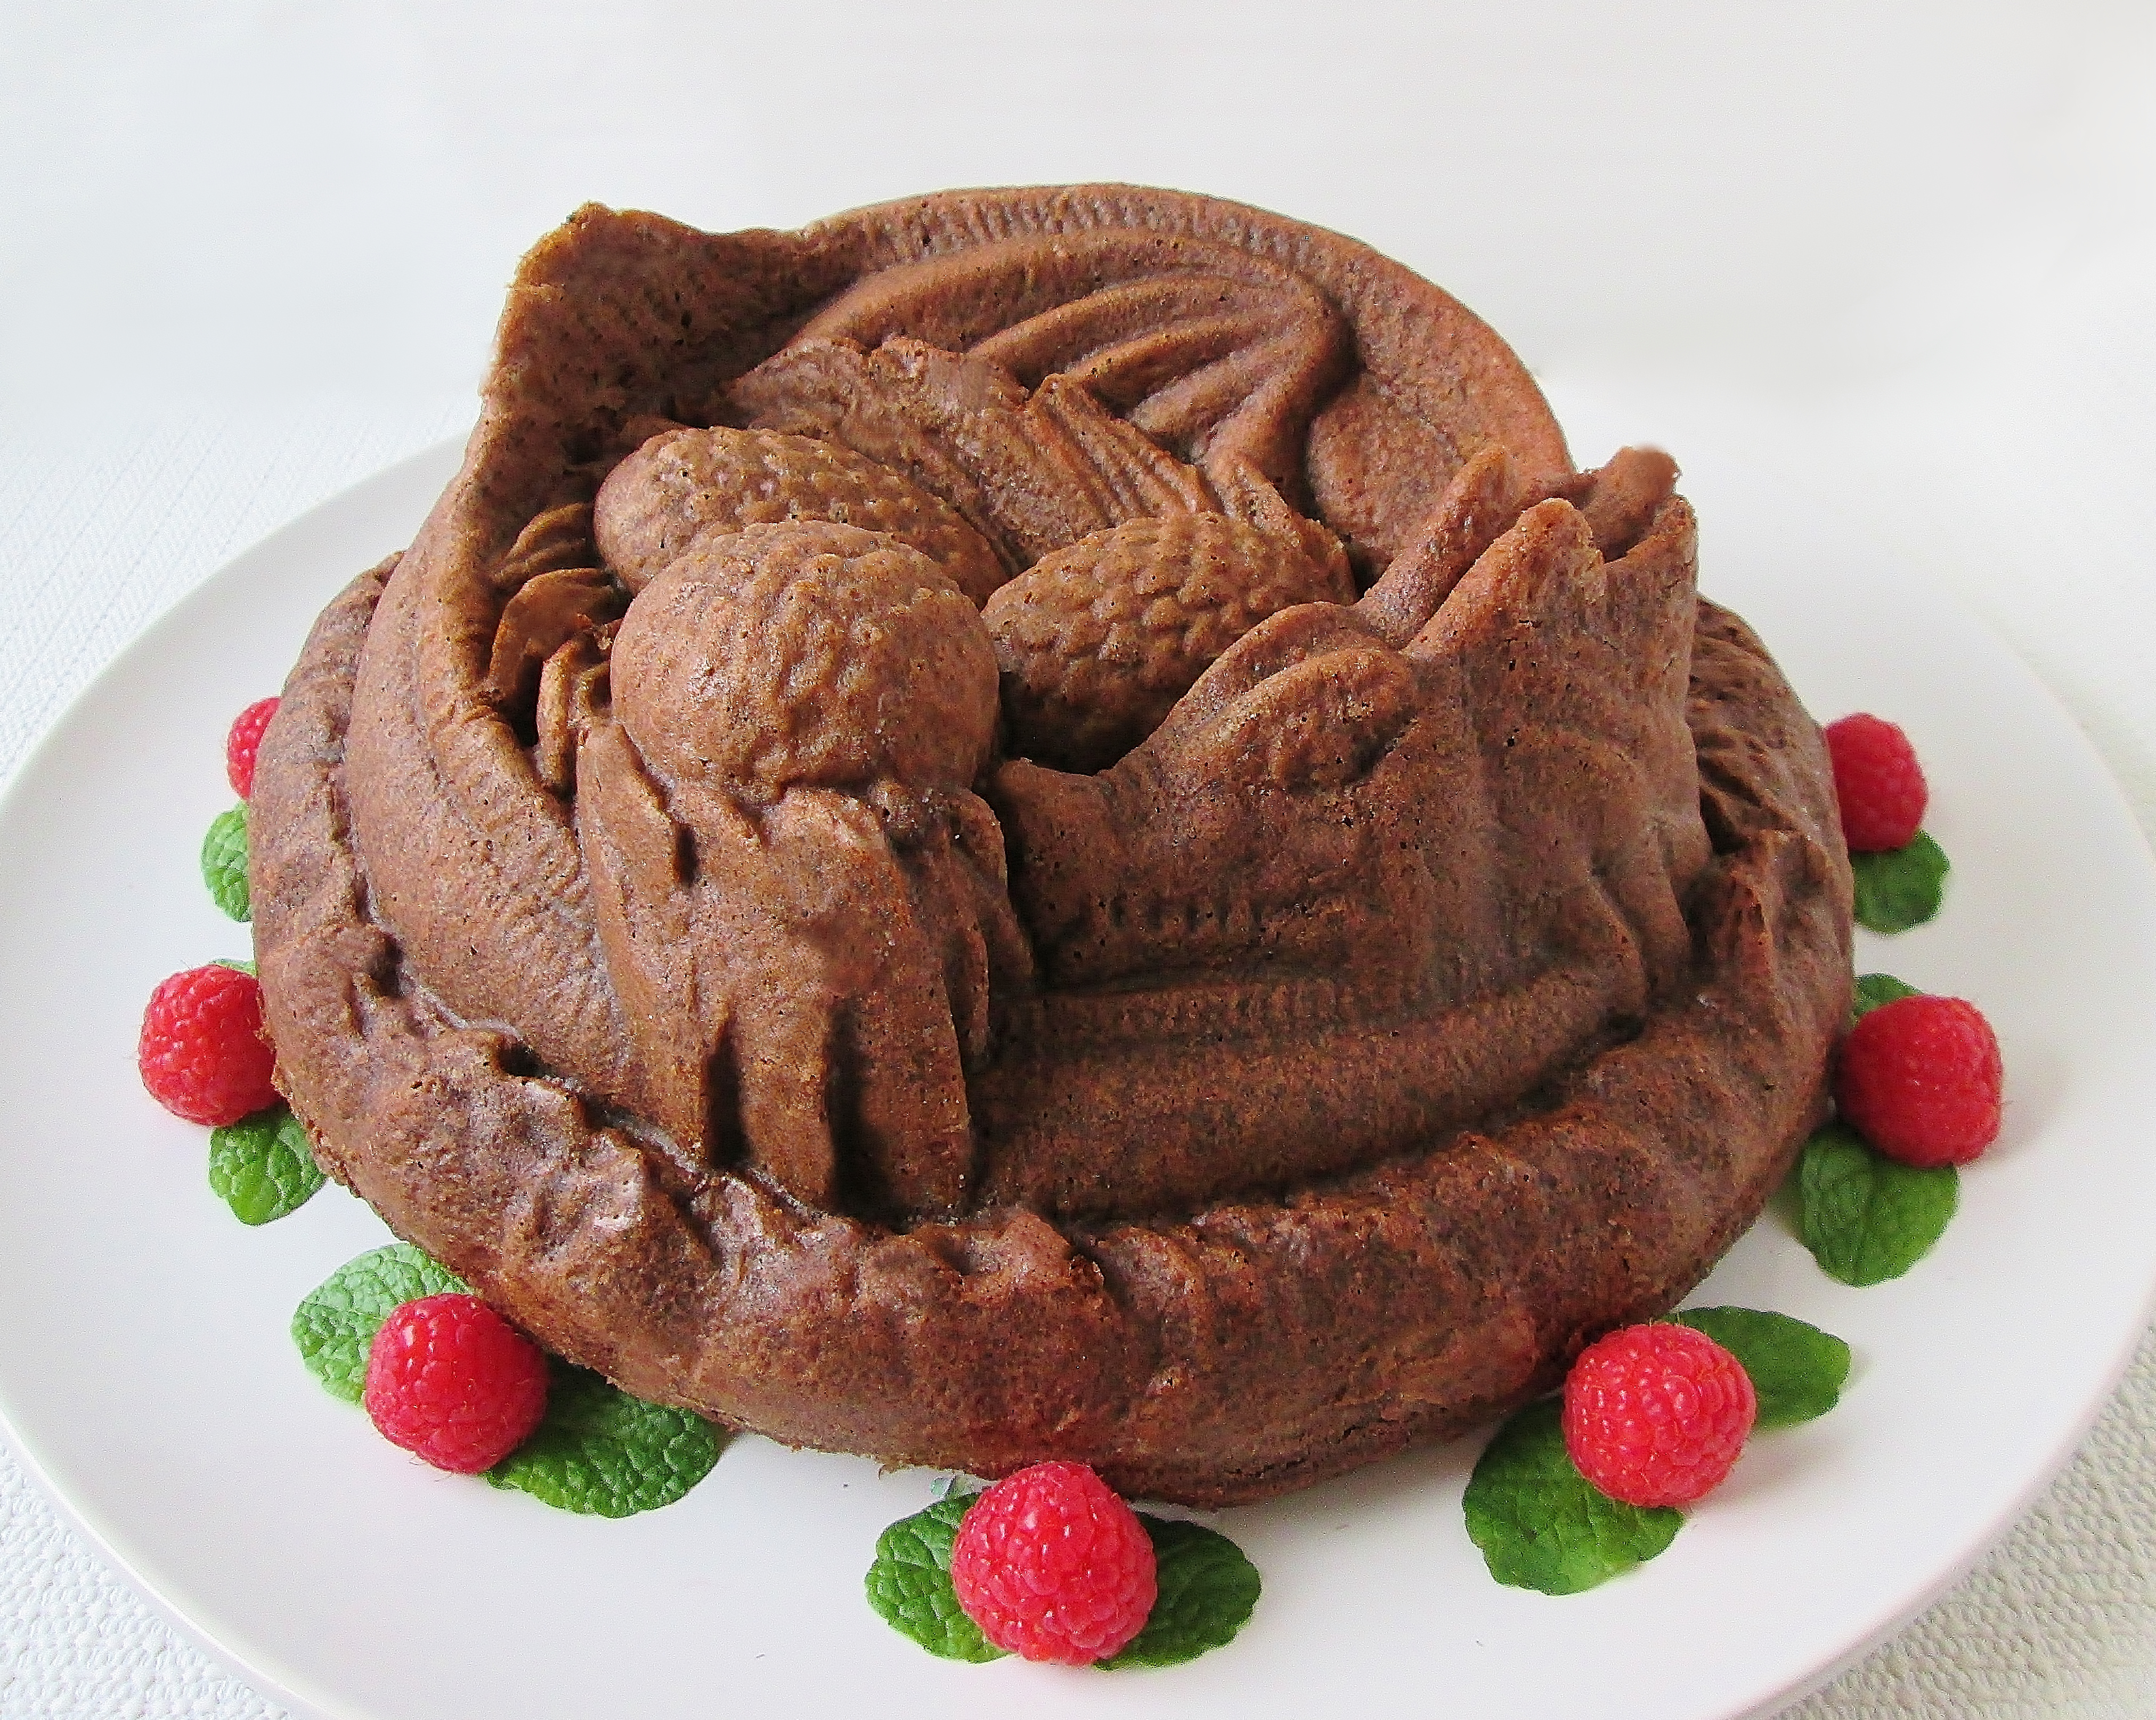 https://wonderlandrecipes.com/2016/01/28/pendragon-cake/king-arthur-pendragon-cake-d-3306/